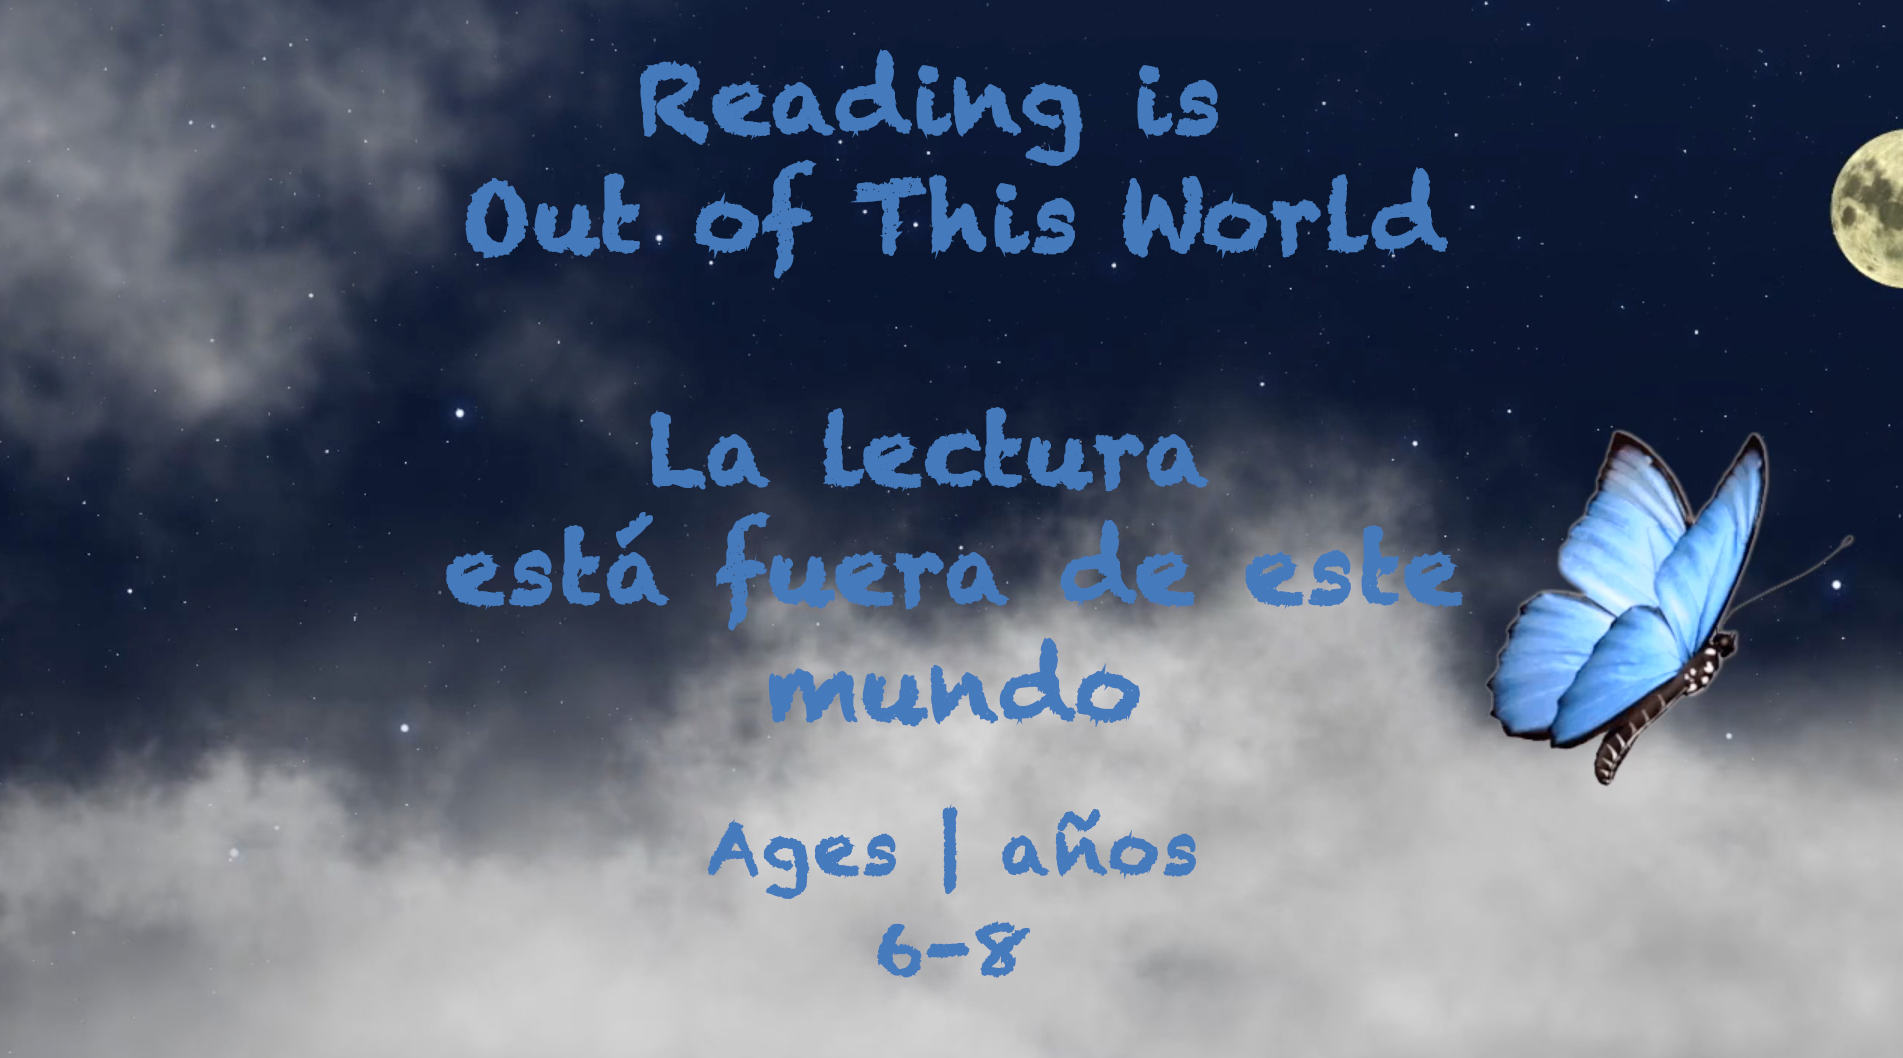 La lectura es algo fuera de este mundo para niños de 6 a 8 años